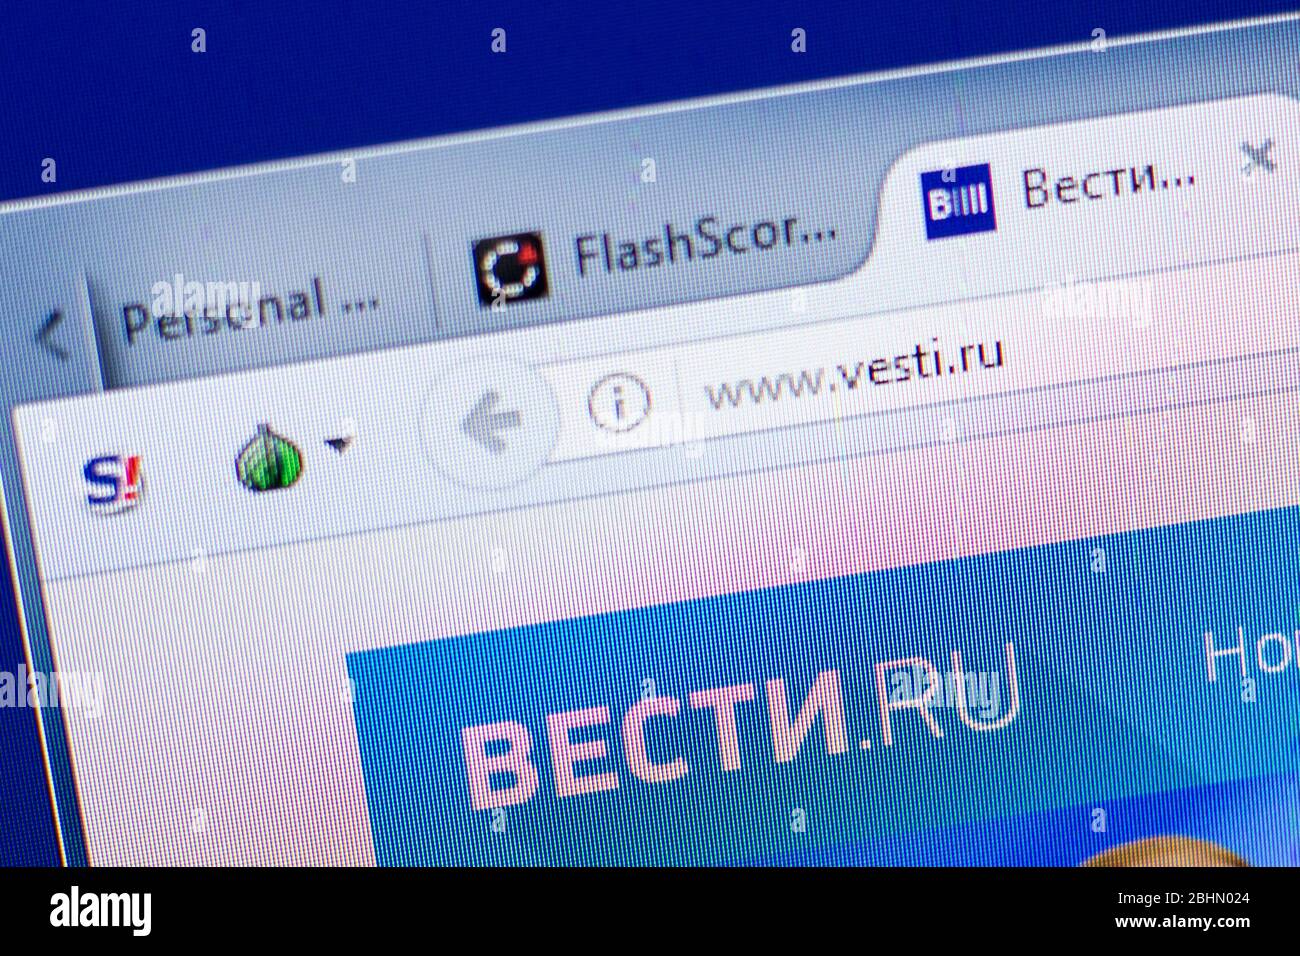 Ryazan, Russia - 08 maggio 2018: Sito web Vesti sul display del PC, url - Vesti.ru Foto Stock